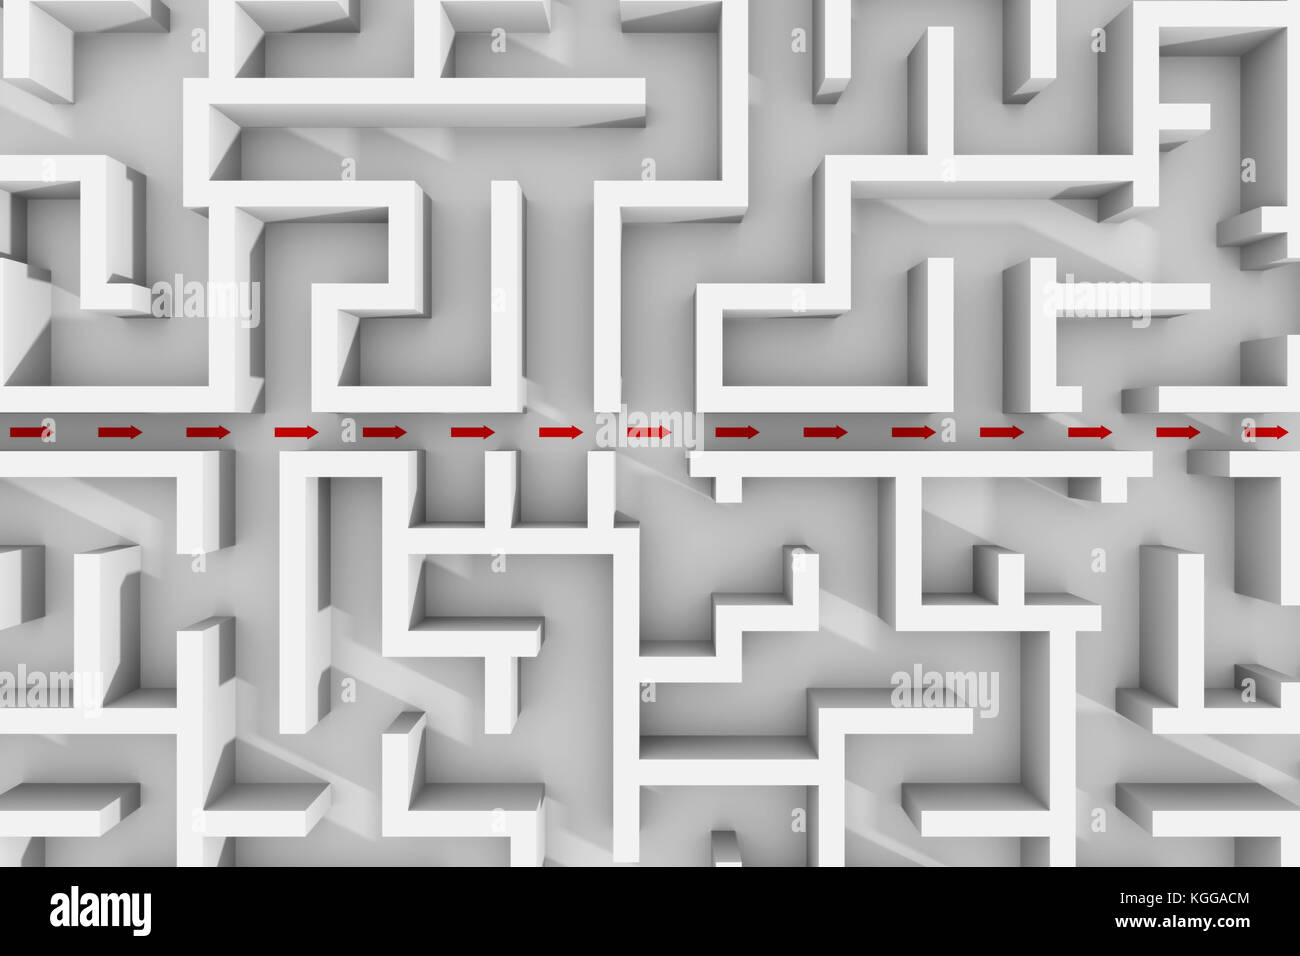 Weiß Labyrinth Struktur, rote Pfeile angezeigt, die Abkürzung durch das Labyrinth Garten (3d-Abbildung) Stockfoto